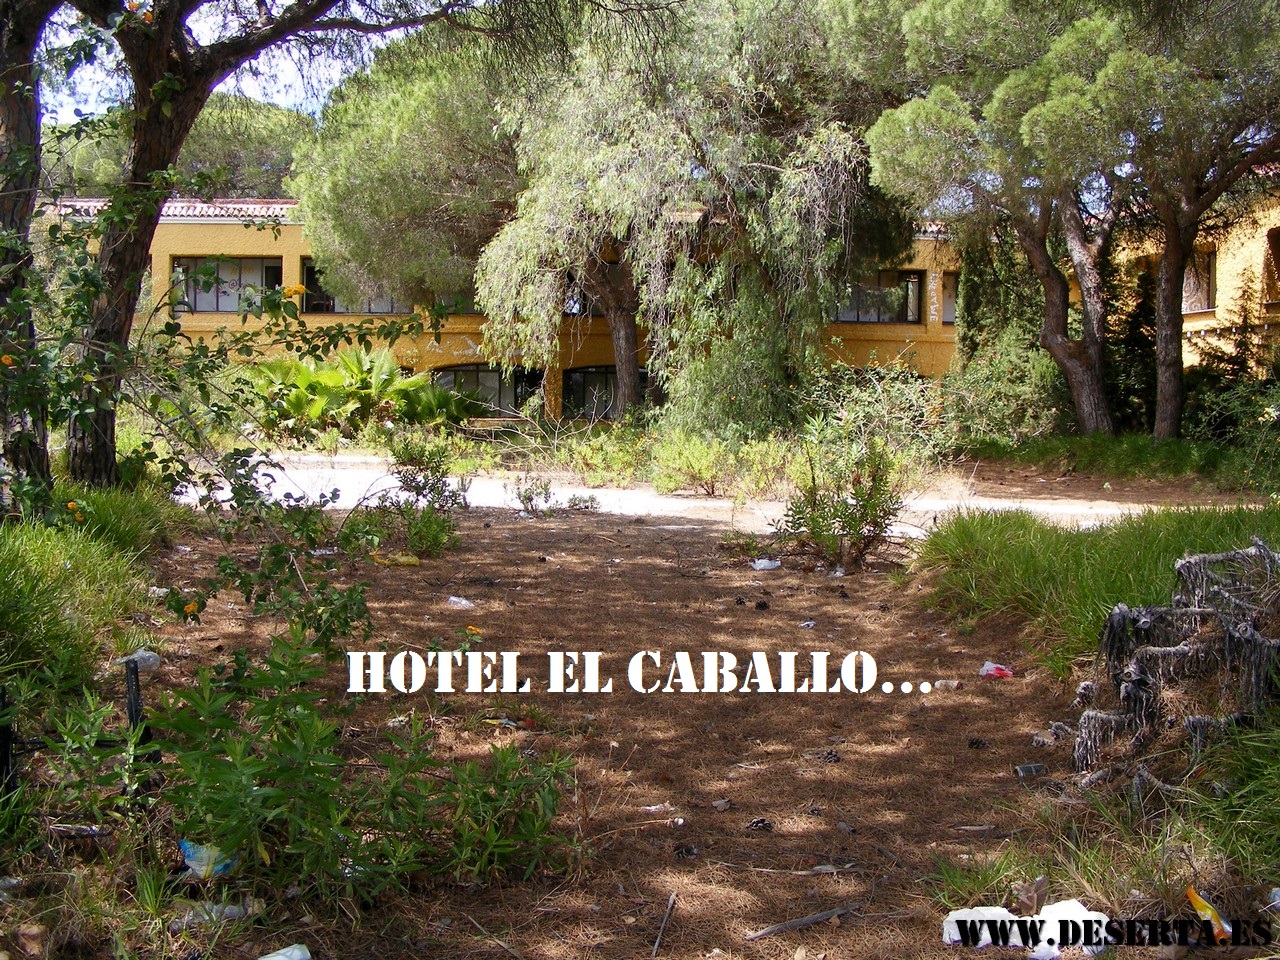 Hotel El Caballo